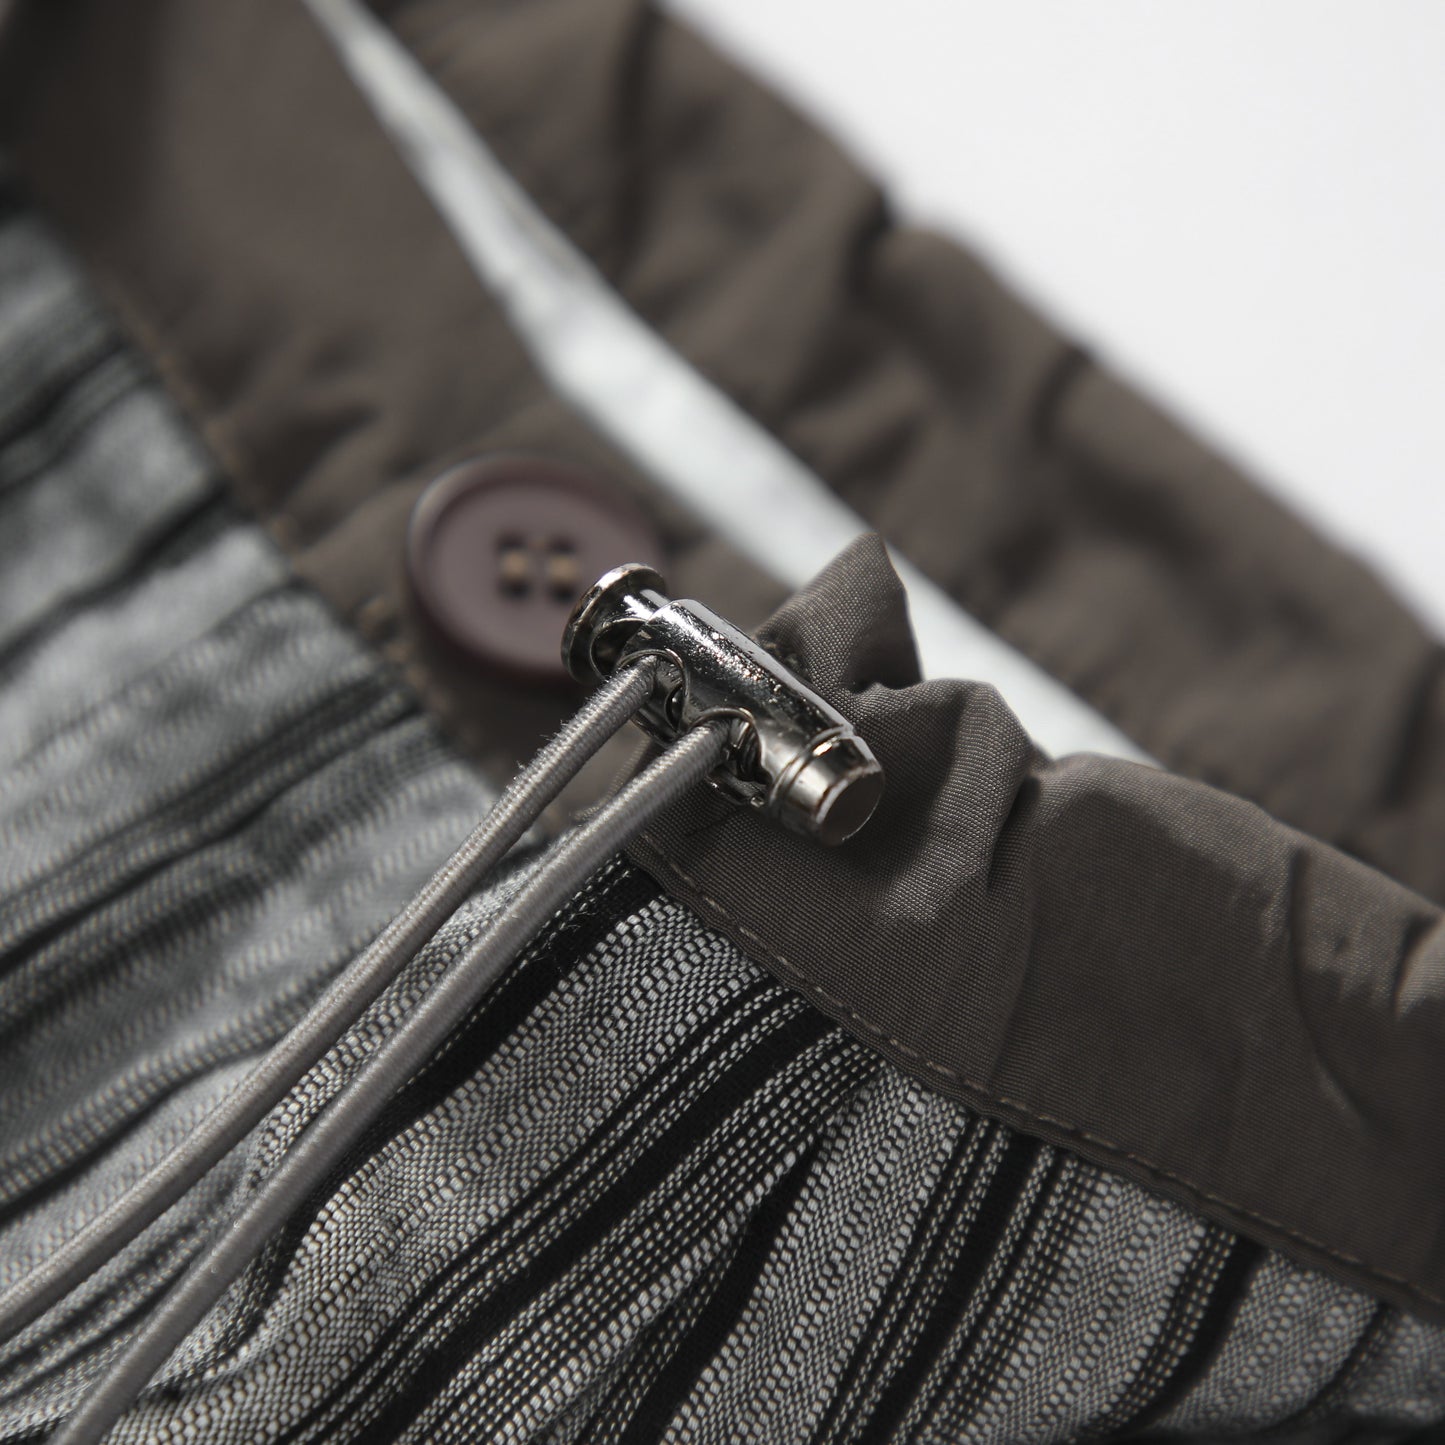 Pantalones de rayas rectos, anchos de tiro alto y ajustados con cordón